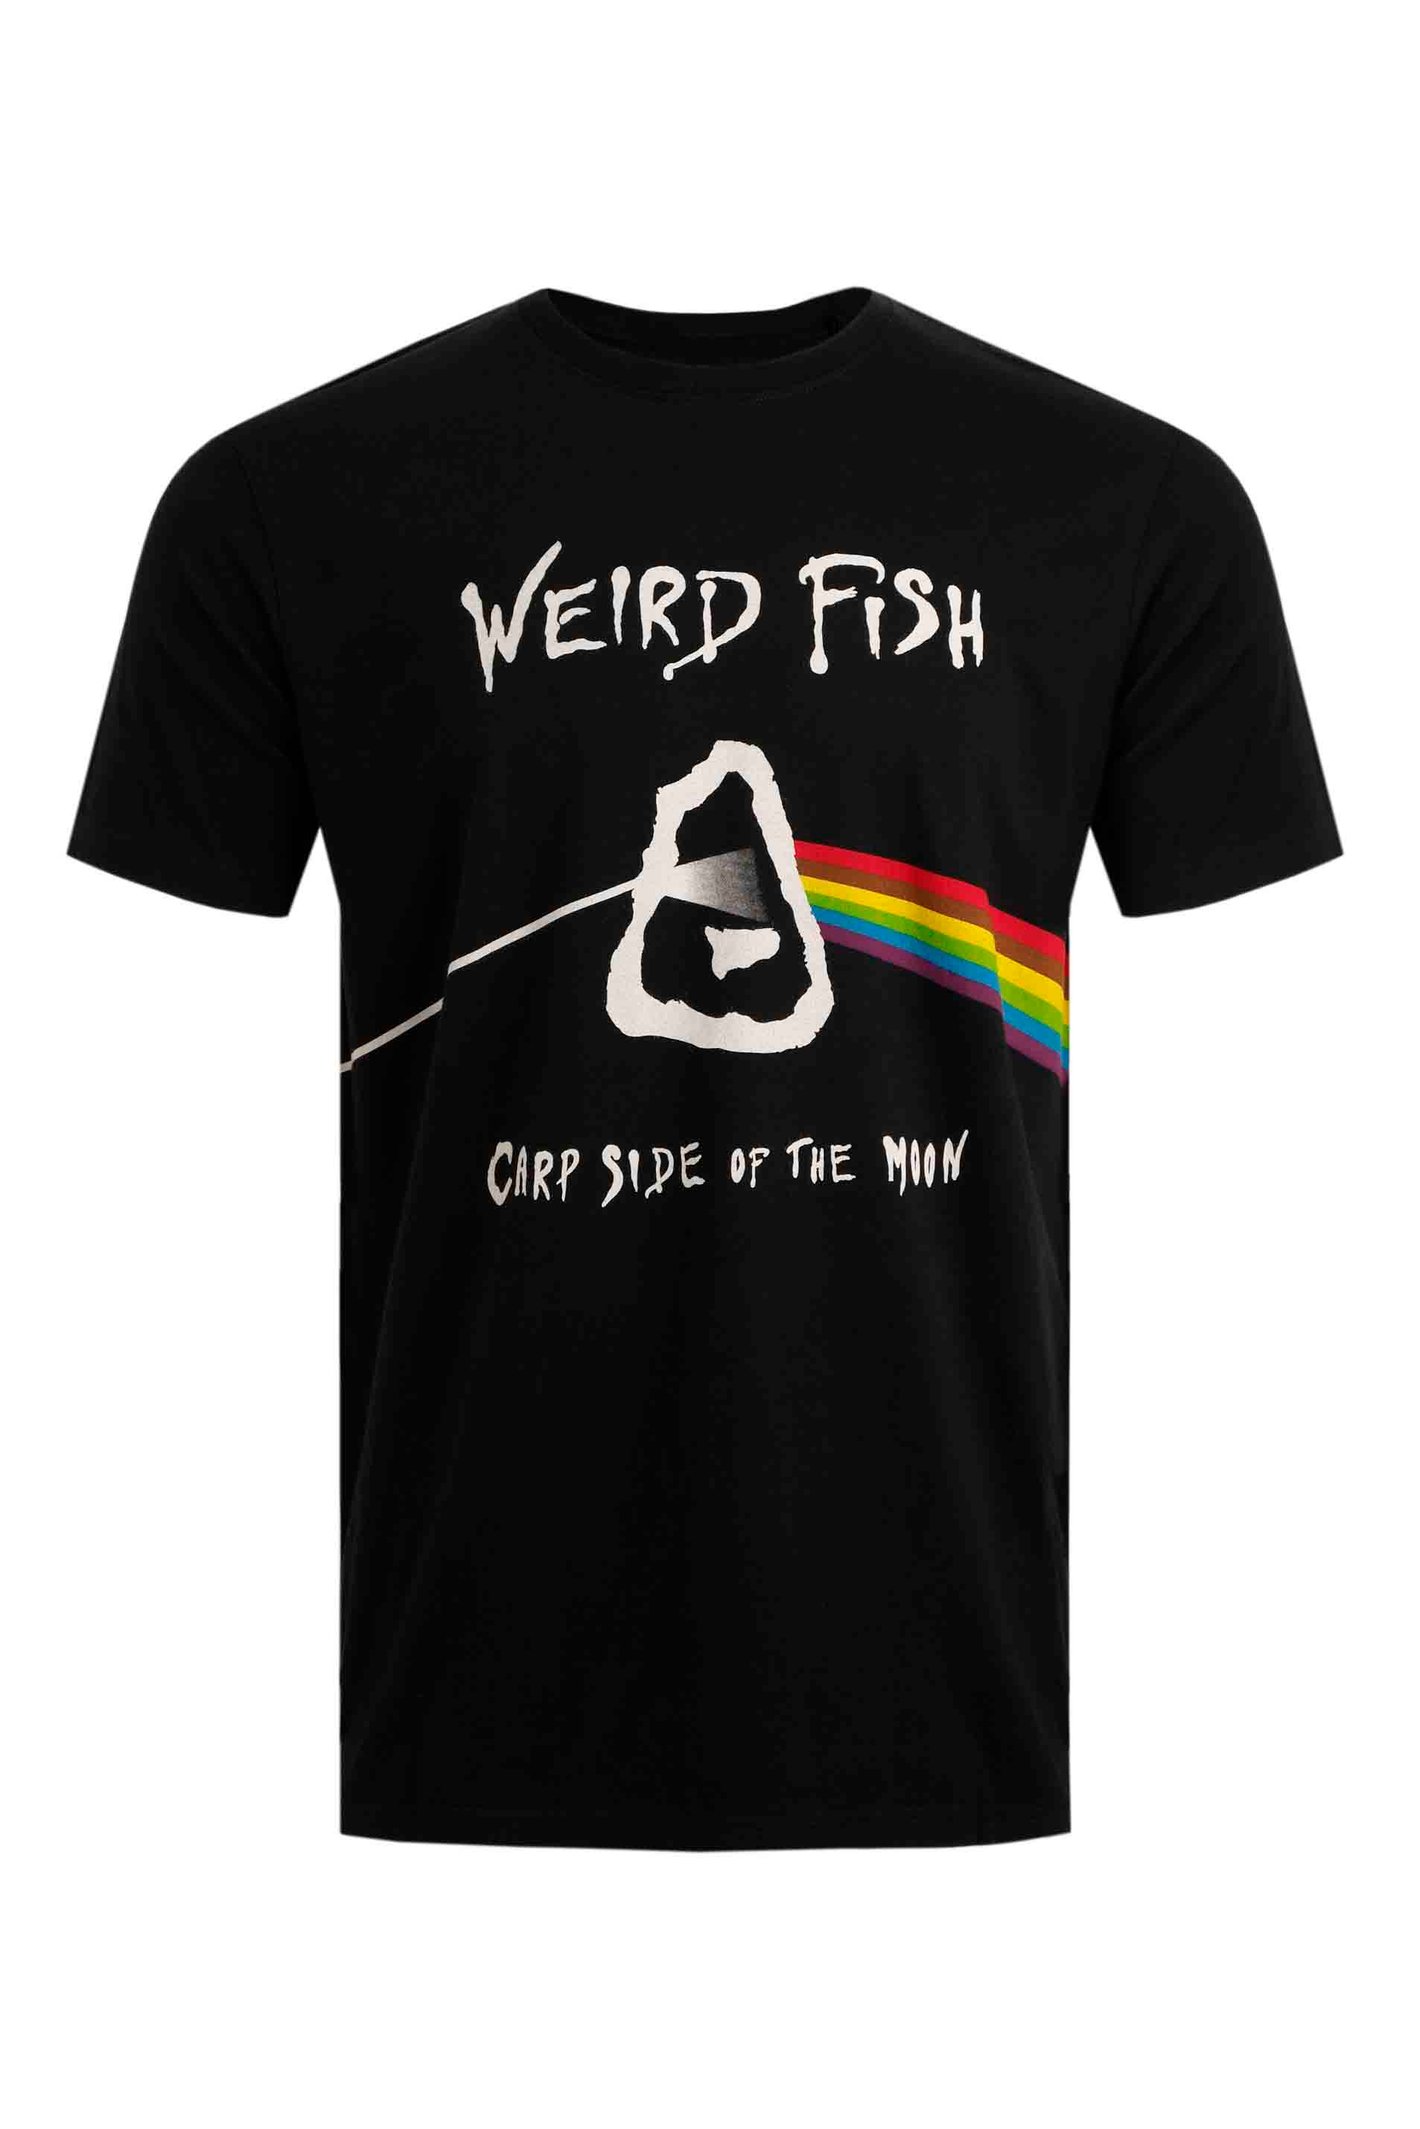 Weird Fish Carp Side Artist T-Shirt Black Size 3XL